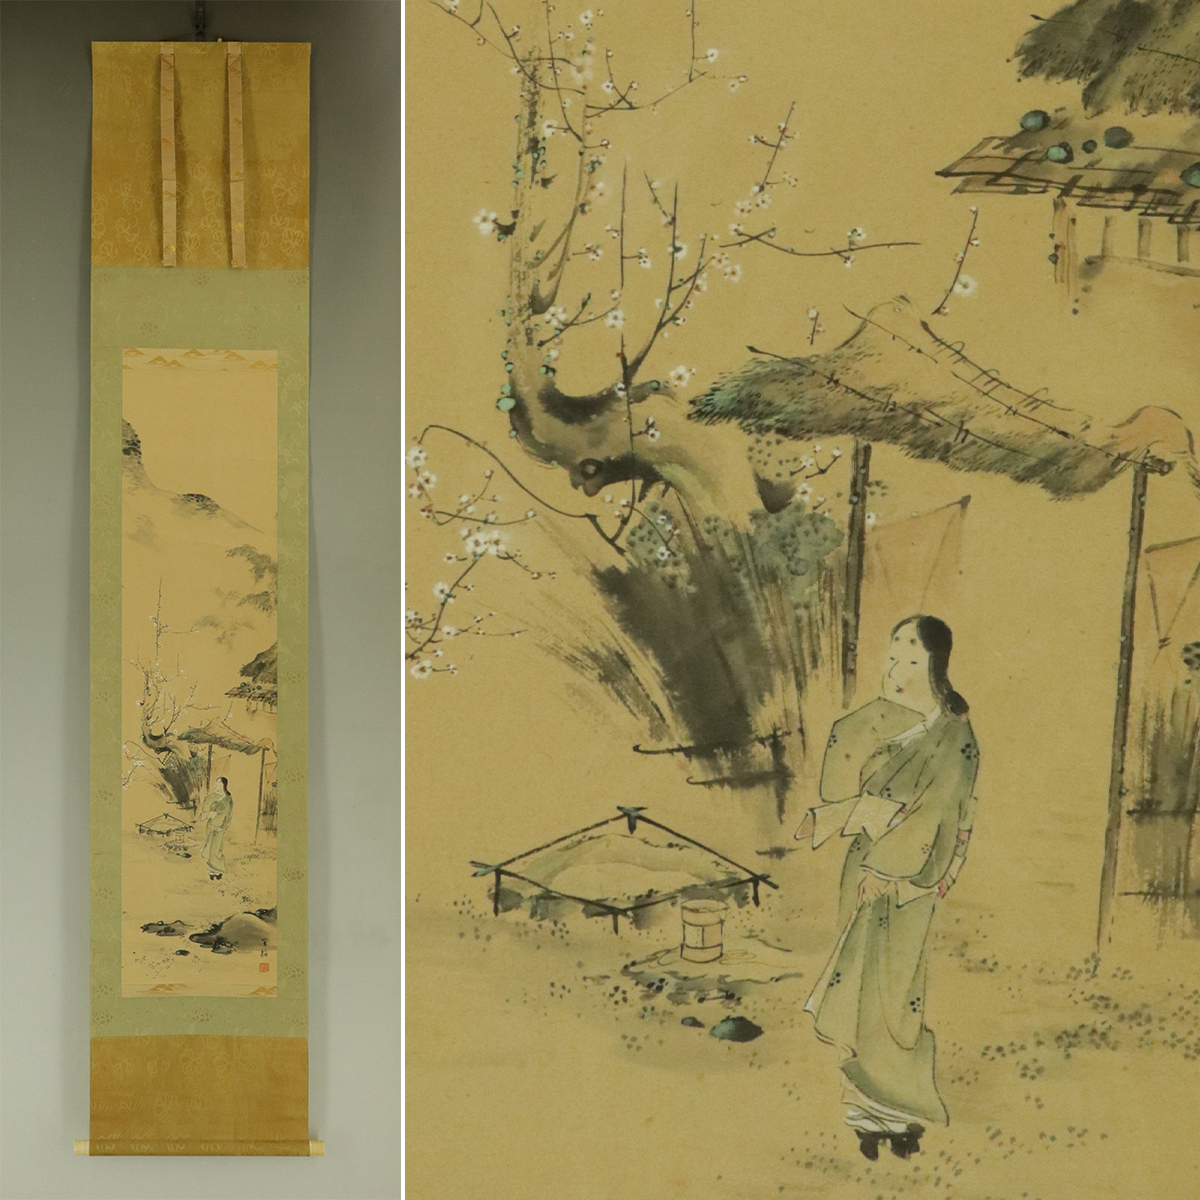 [Authentique] Yoshina Morimura [Fleurs de prunier blanc et une belle femme] ◆Livre papier◆Boîte◆Parchemin suspendu t06035, Peinture, Peinture japonaise, personne, Bodhisattva